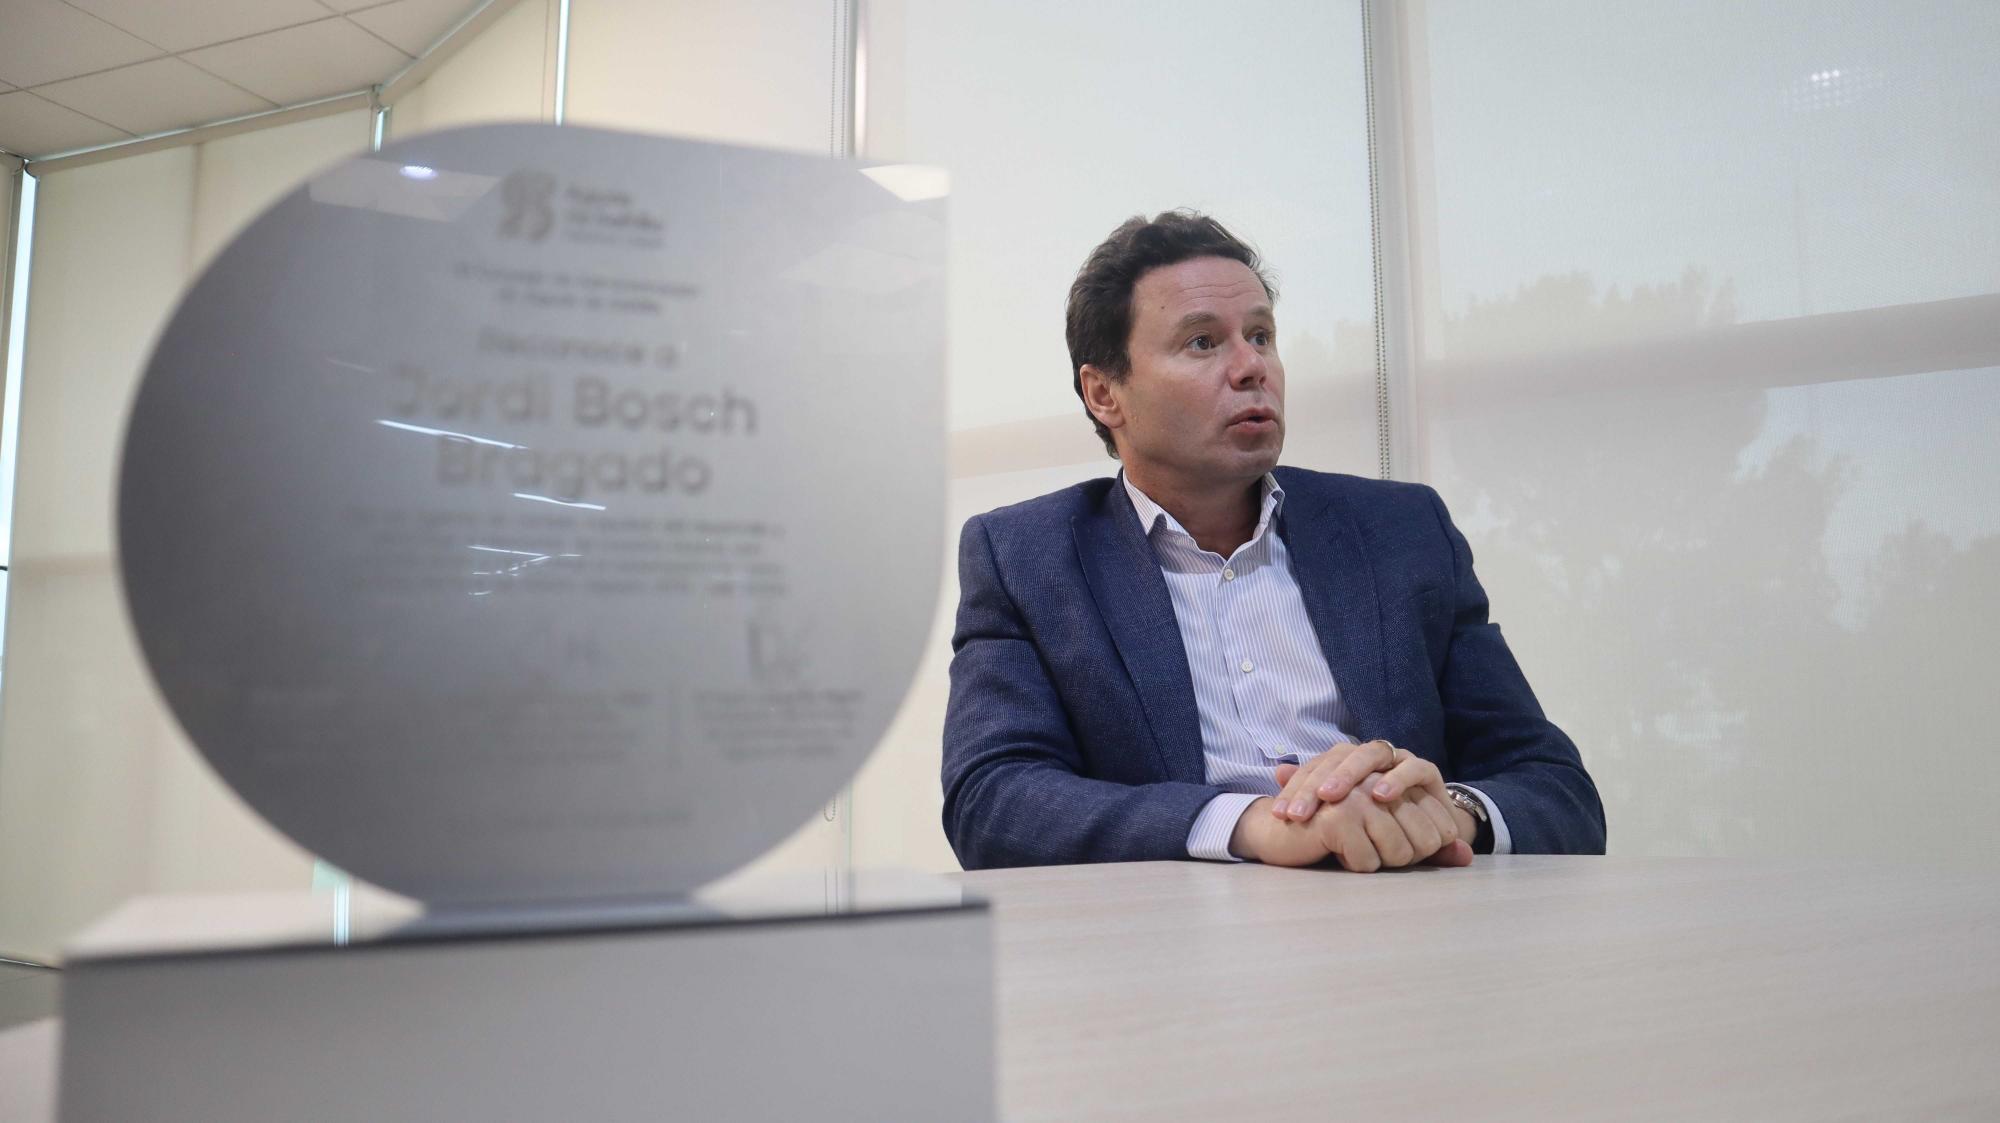 $!Bosch celebró la obtención de 120 millones de pesos a través del socio tecnológico Veolia.